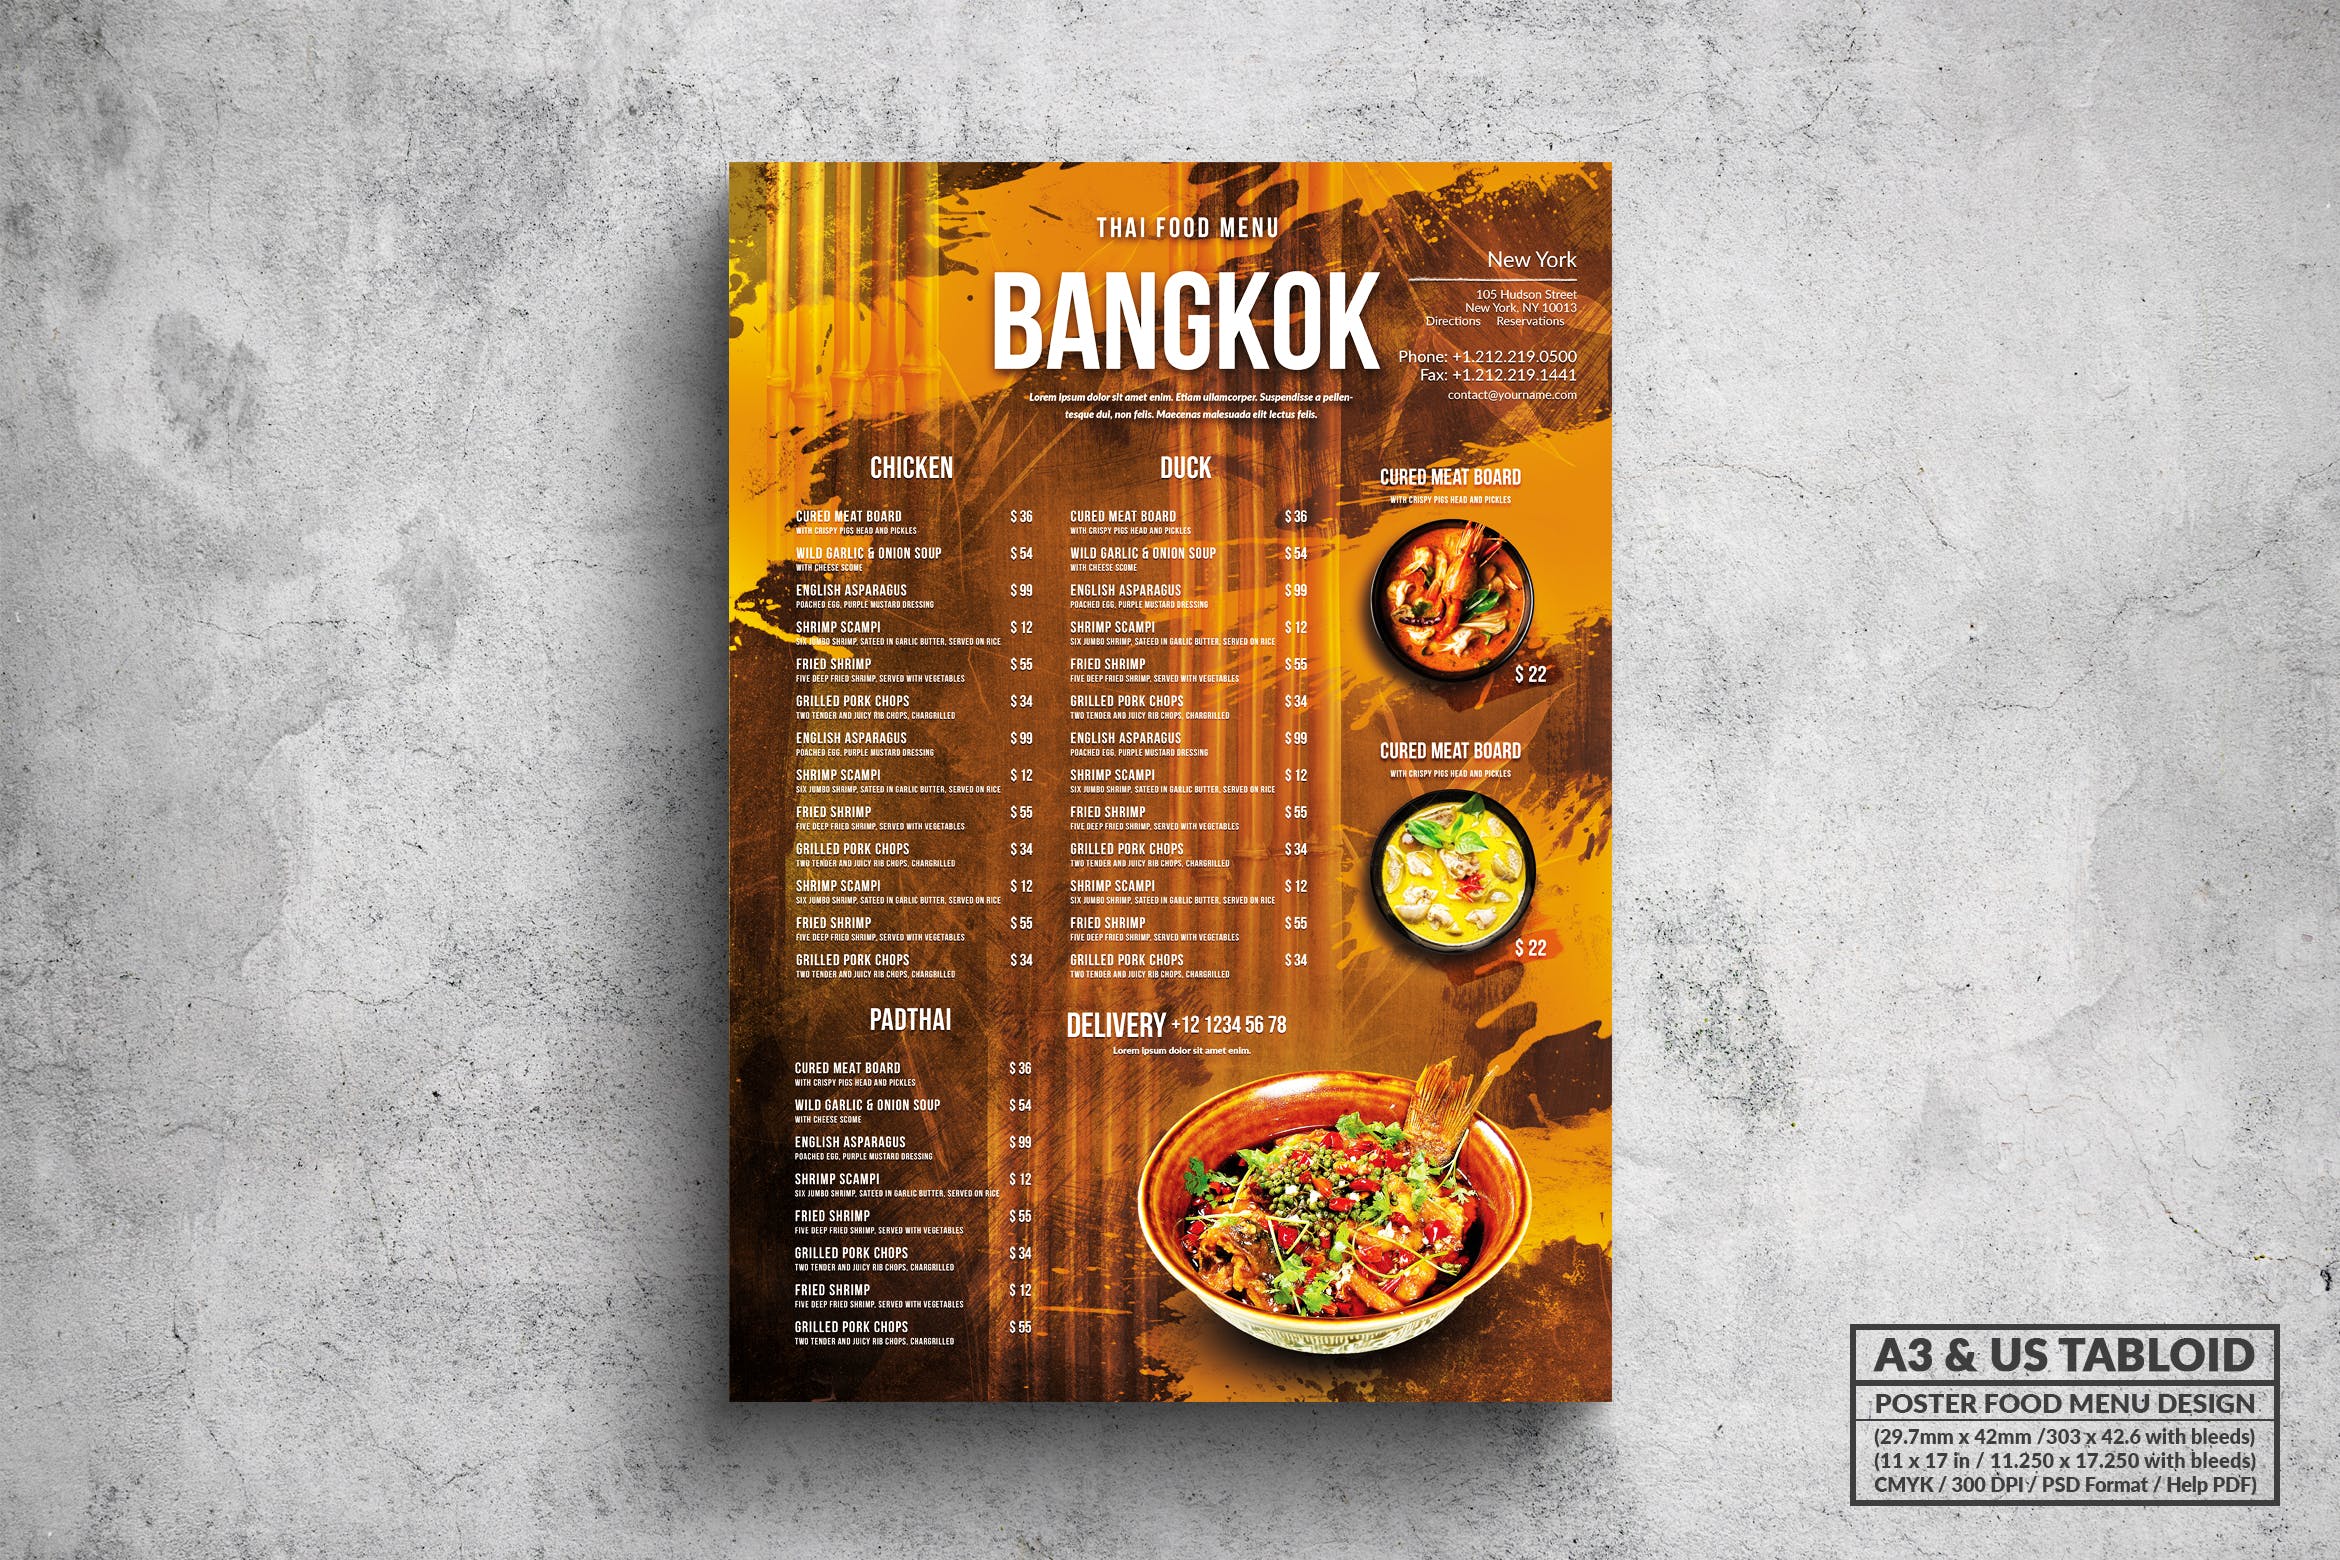 泰国菜餐厅菜单海报PSD素材第一素材精选模板 Bangkok Thai Food Menu – A3 & US Tabloid Poster插图